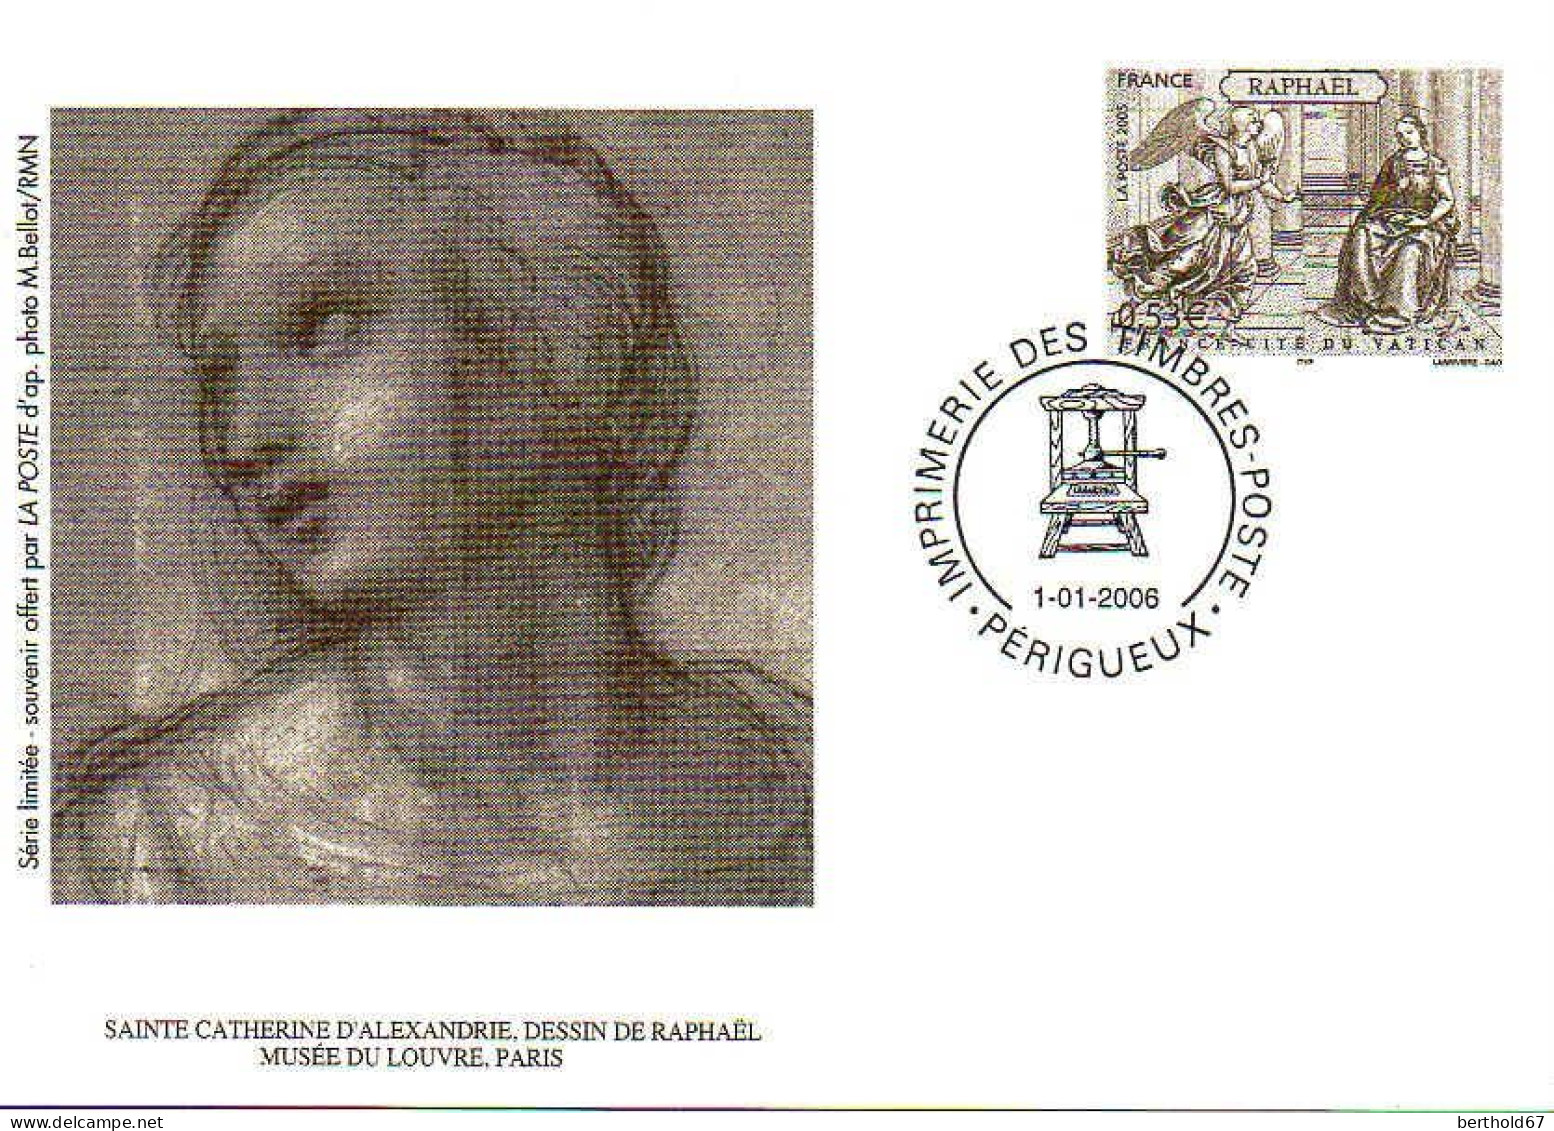 France Entier-P Carte (5010-CP) Raphaël France Cité Du Vatican - Pseudo-entiers Officiels